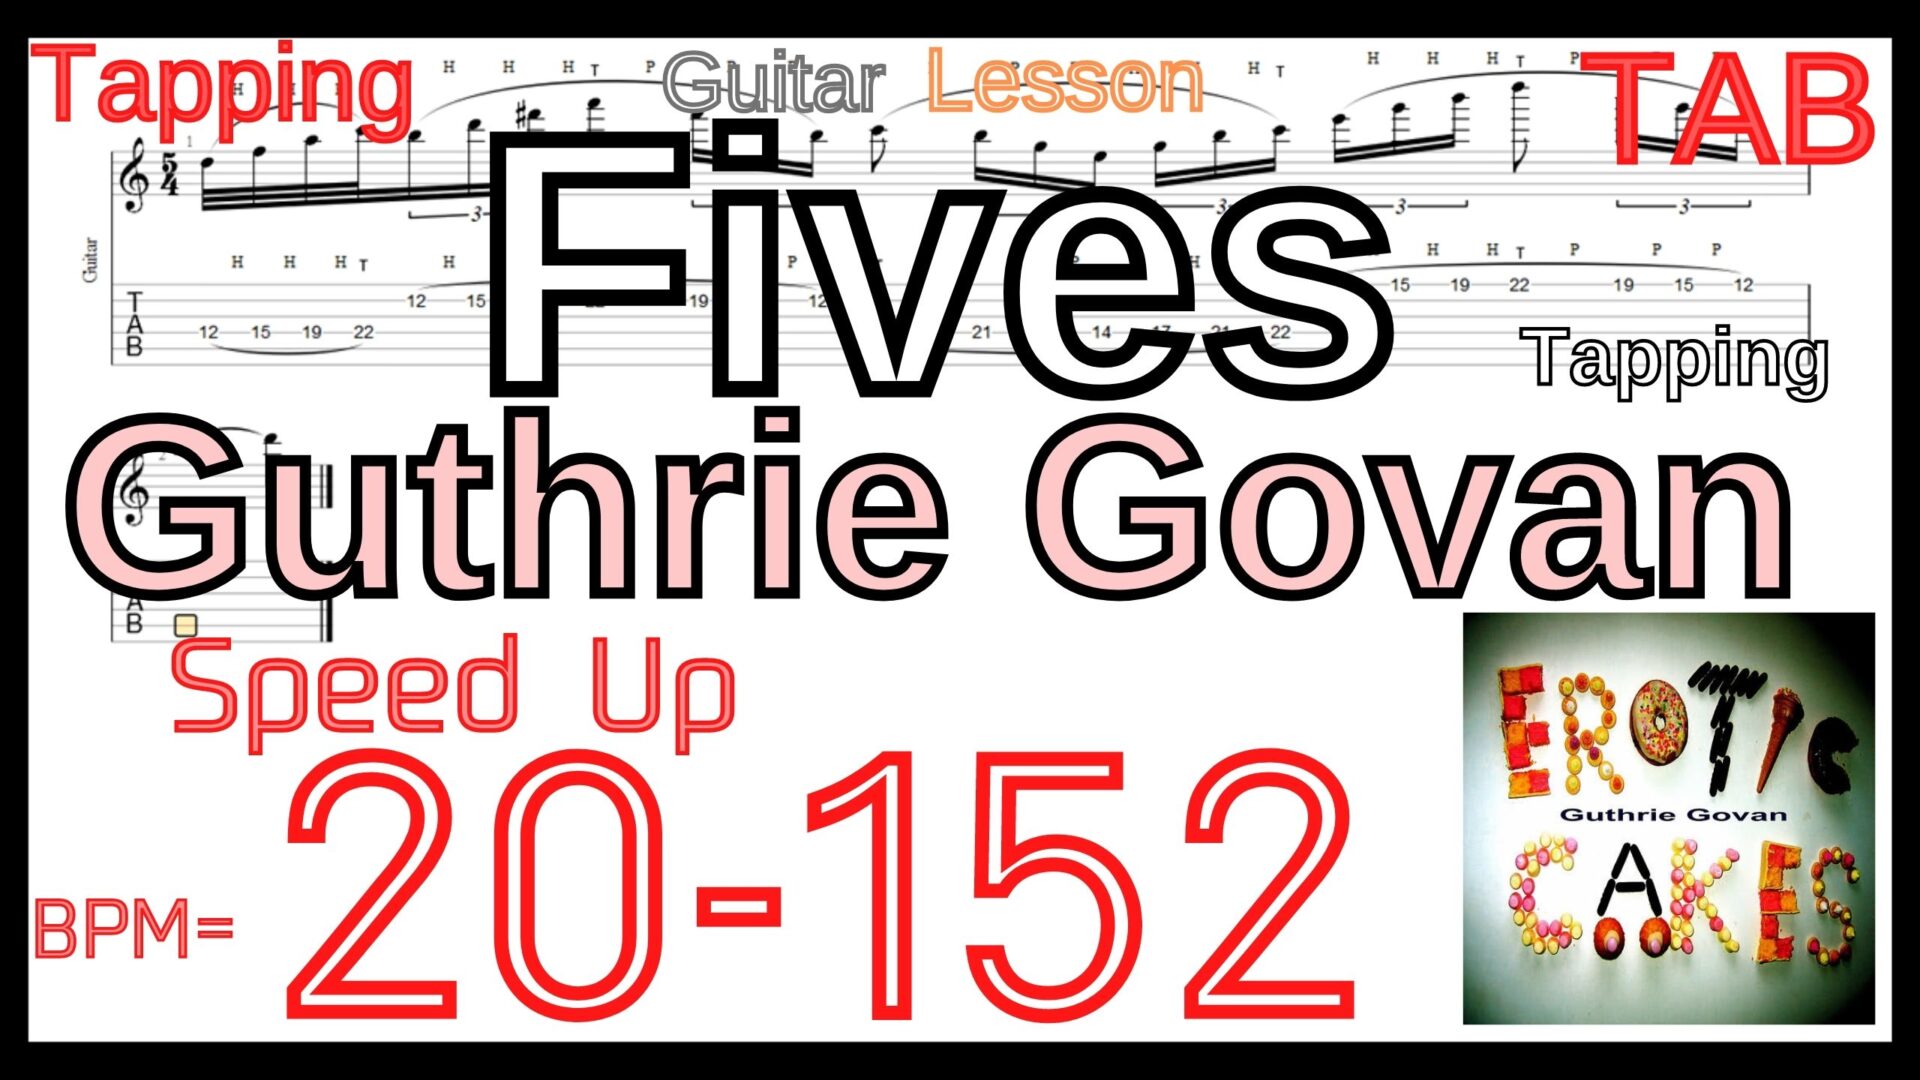 【ギターハンマリング プリング(レガート)上達練習】Guthrie Govan - Fives Tapping ガスリー･ゴーヴァン / ファイブス ソロ前タッピングの集中練習【Tapping タッピング】ギターのハンマリング プリング(レガート)が上手くなりたい人にオススメのフレーズ特集｡初心者さんにもオススメ！